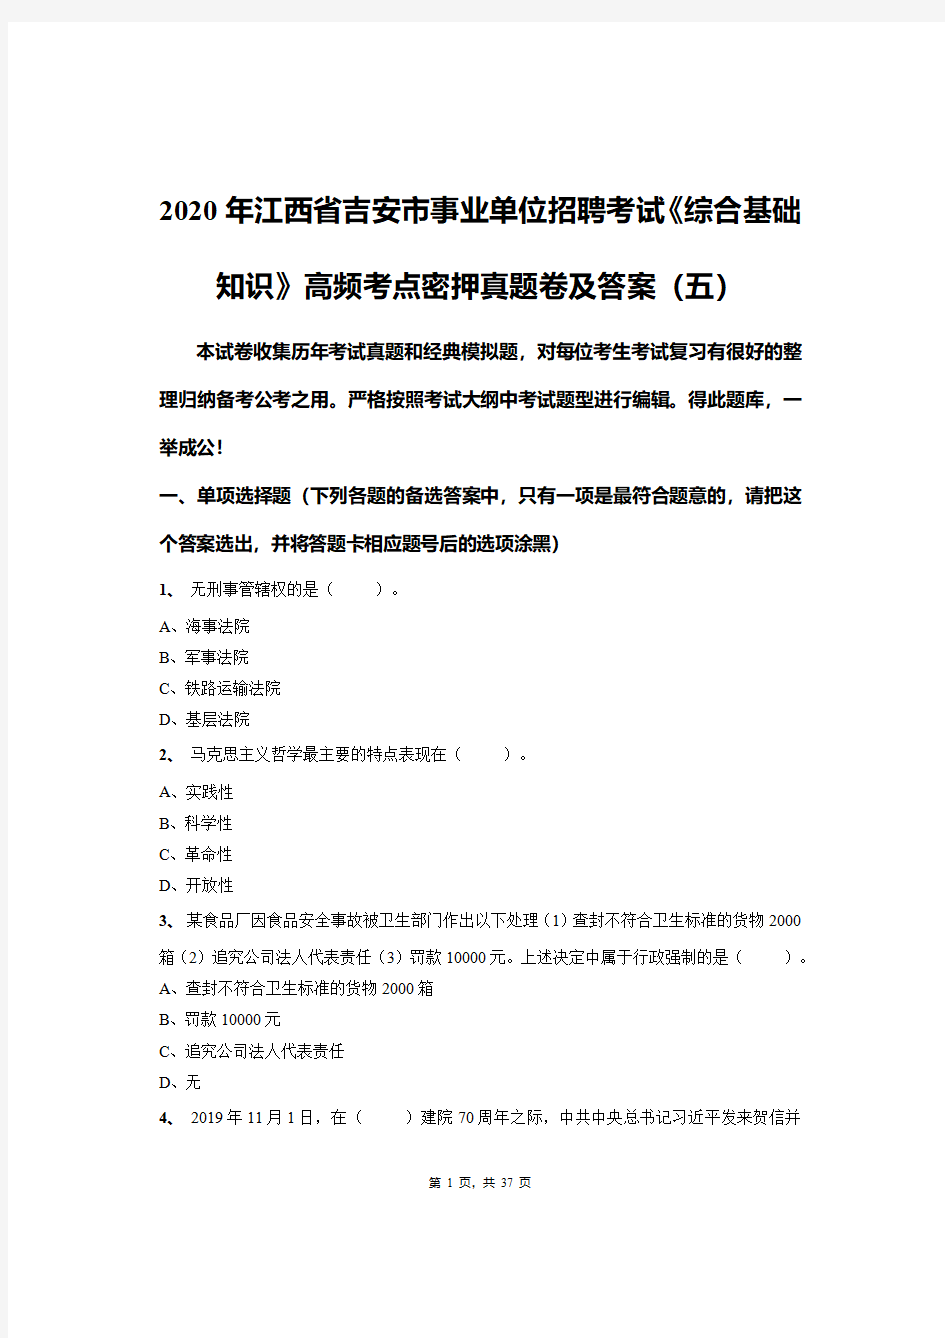 2020年江西省吉安市事业单位招聘考试《综合基础知识》高频考点密押真题卷及答案(五)